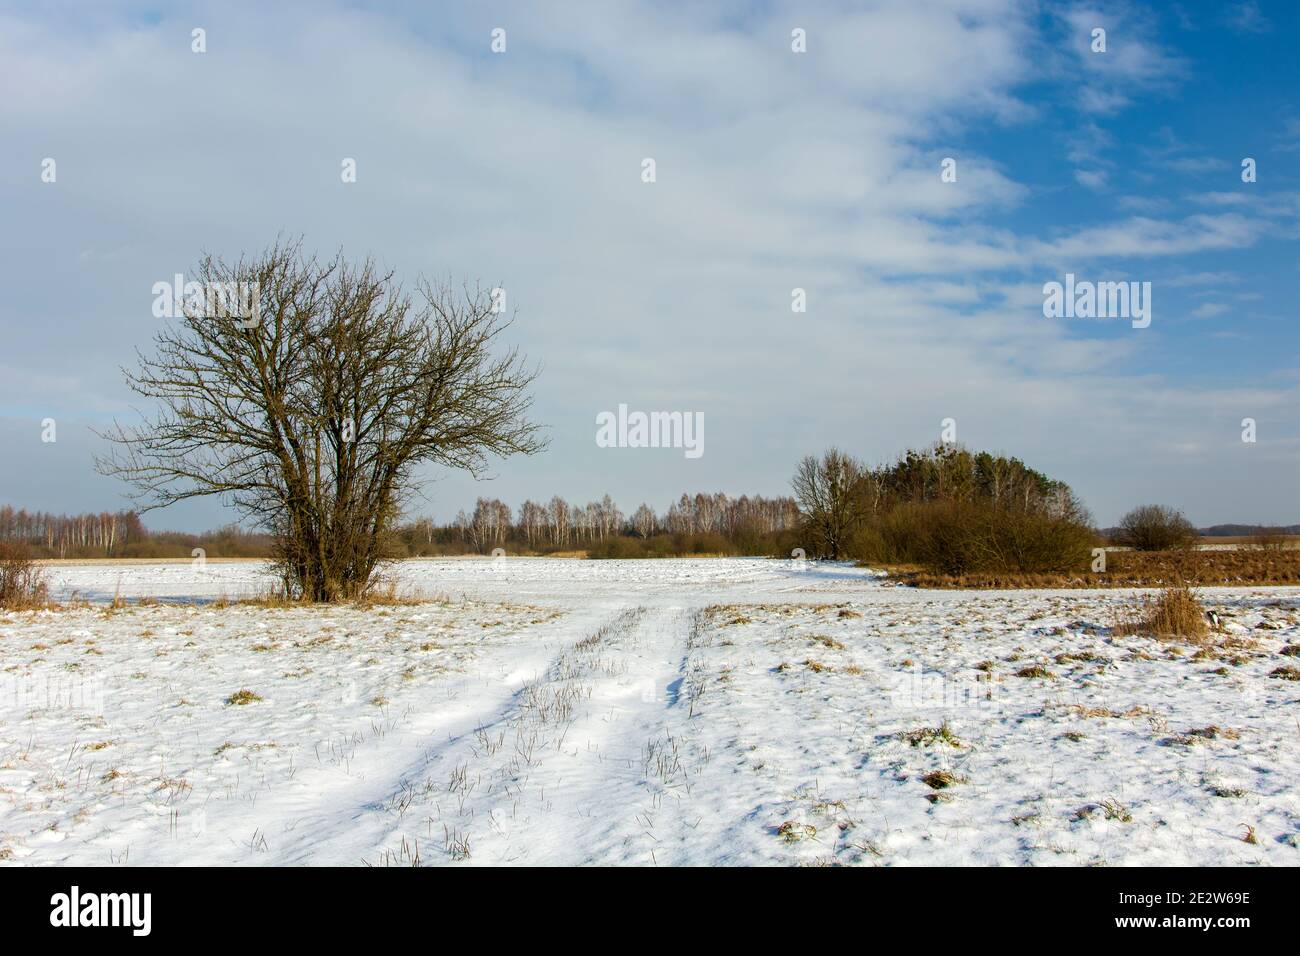 Un arbre sans feuilles et une route couverte de neige, jour d'hiver ensoleillé Banque D'Images